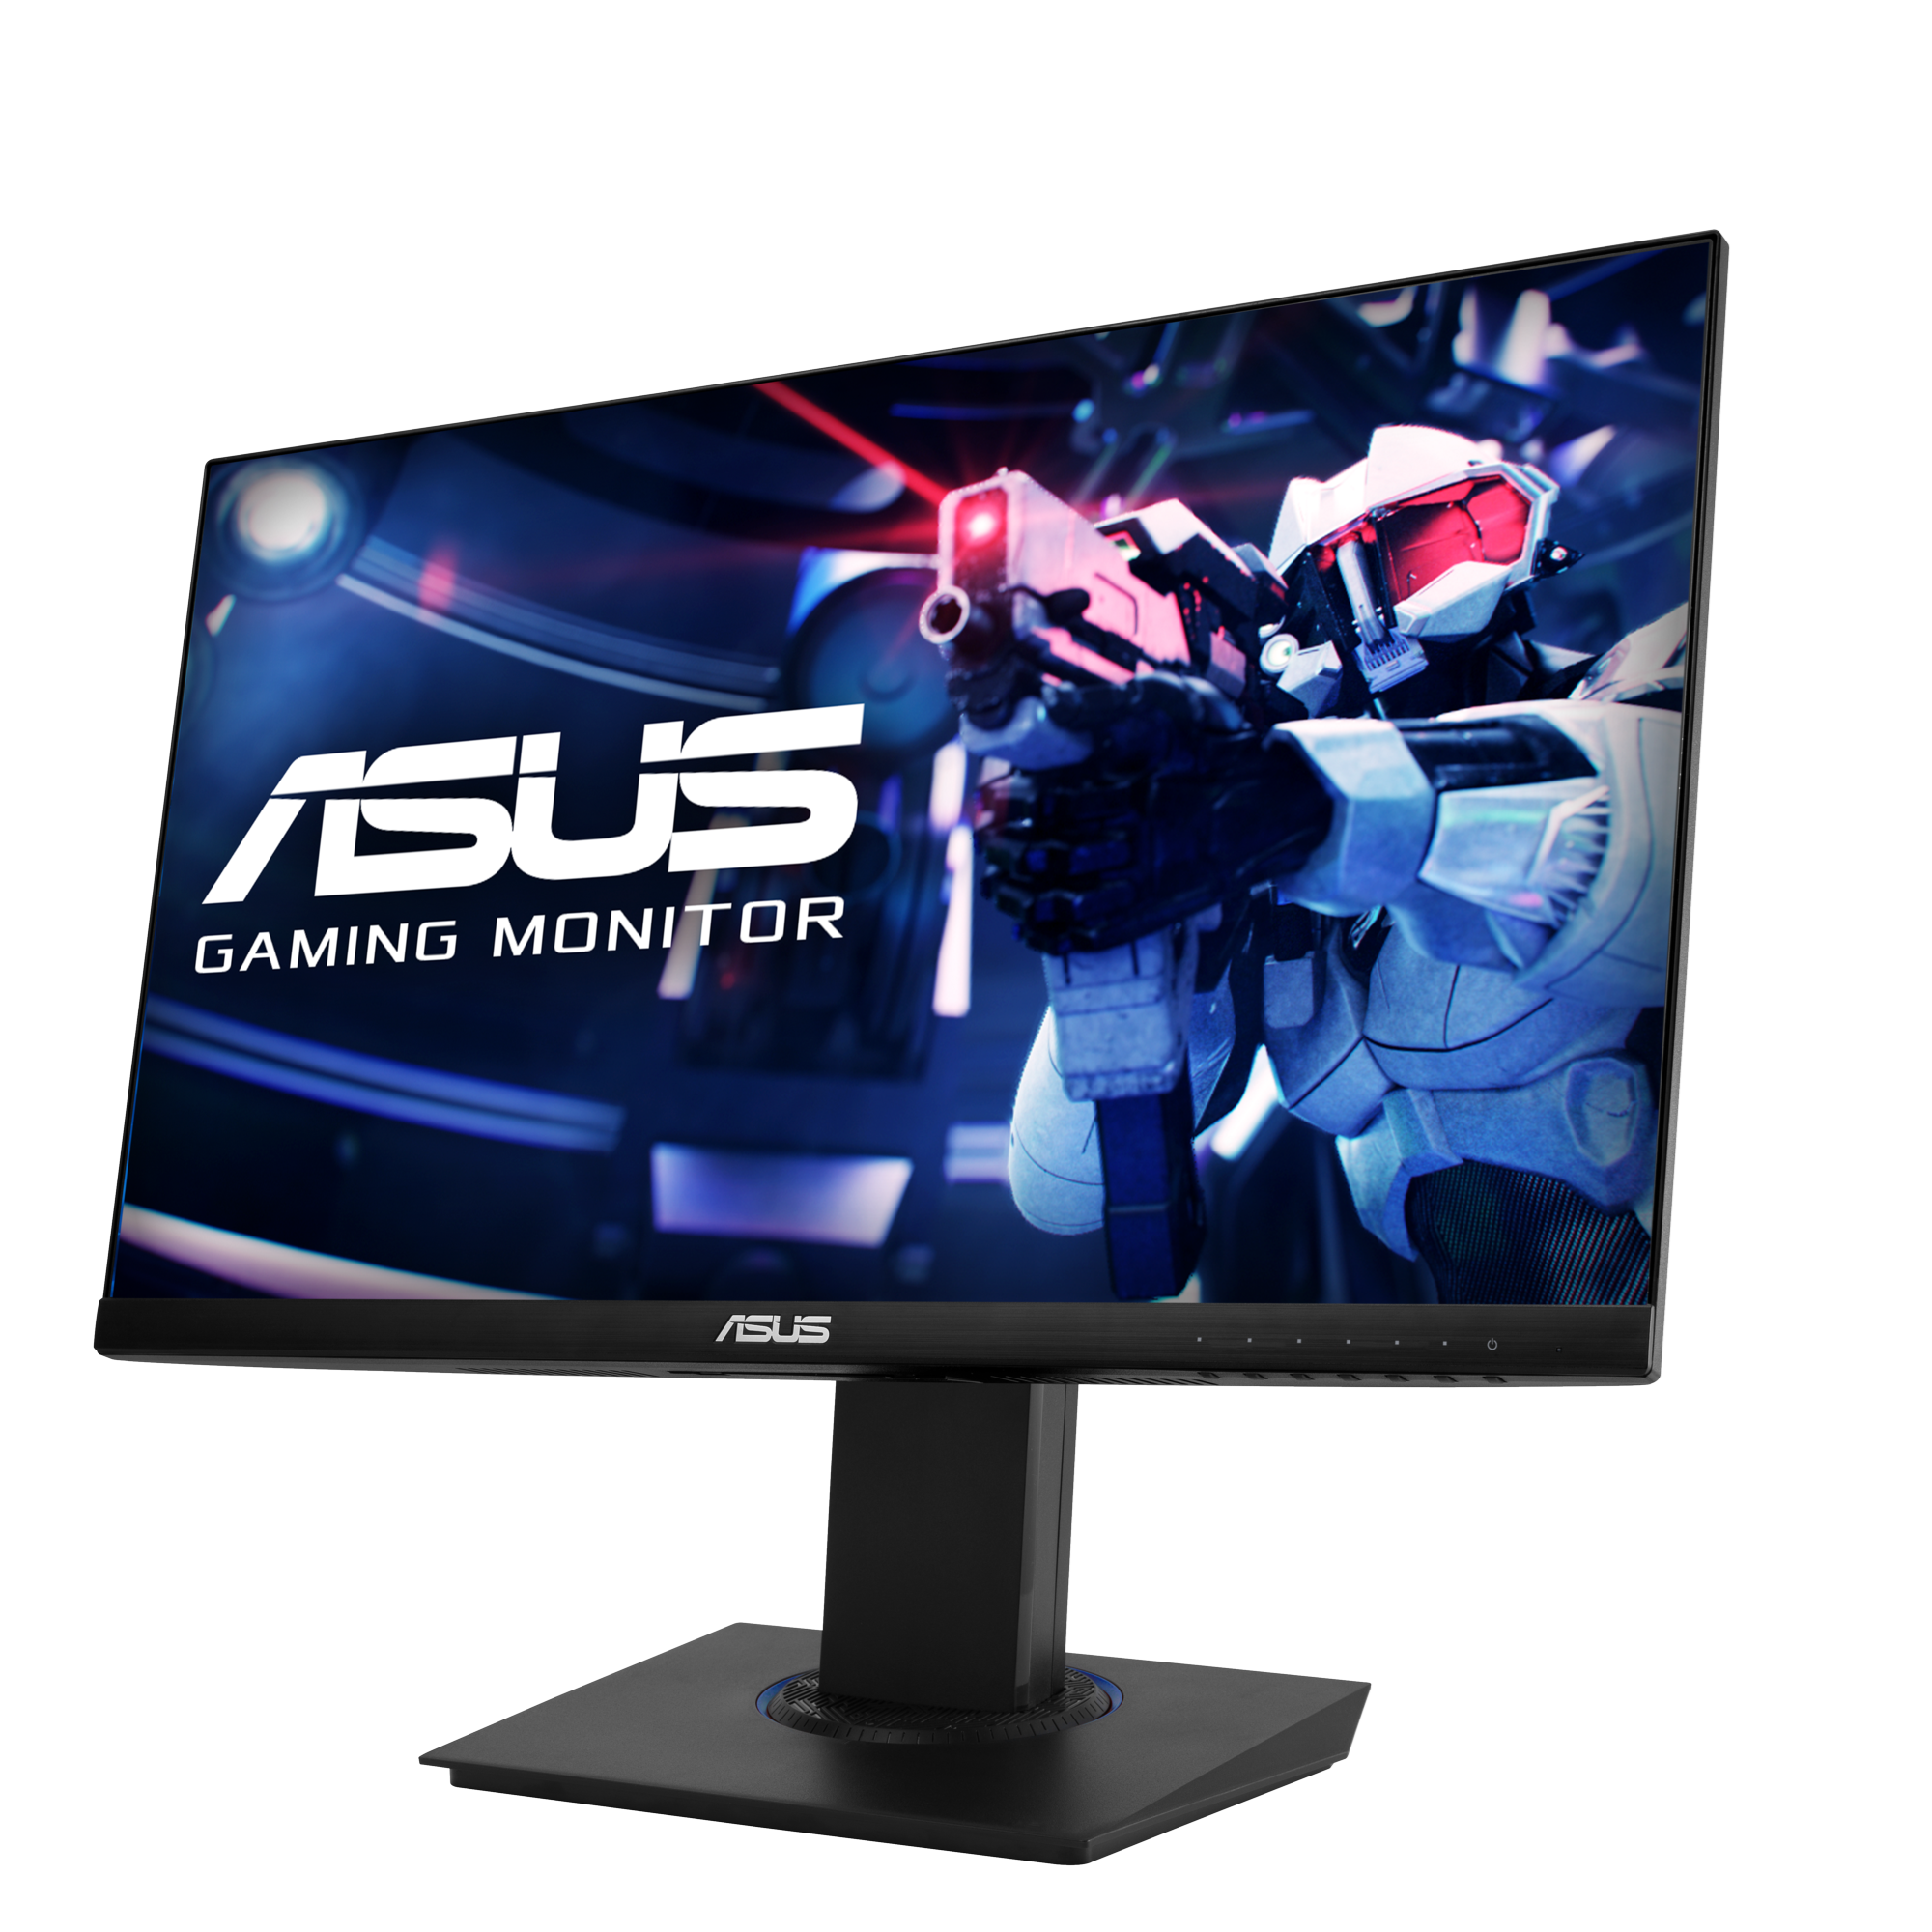 asuds desktop monitor png